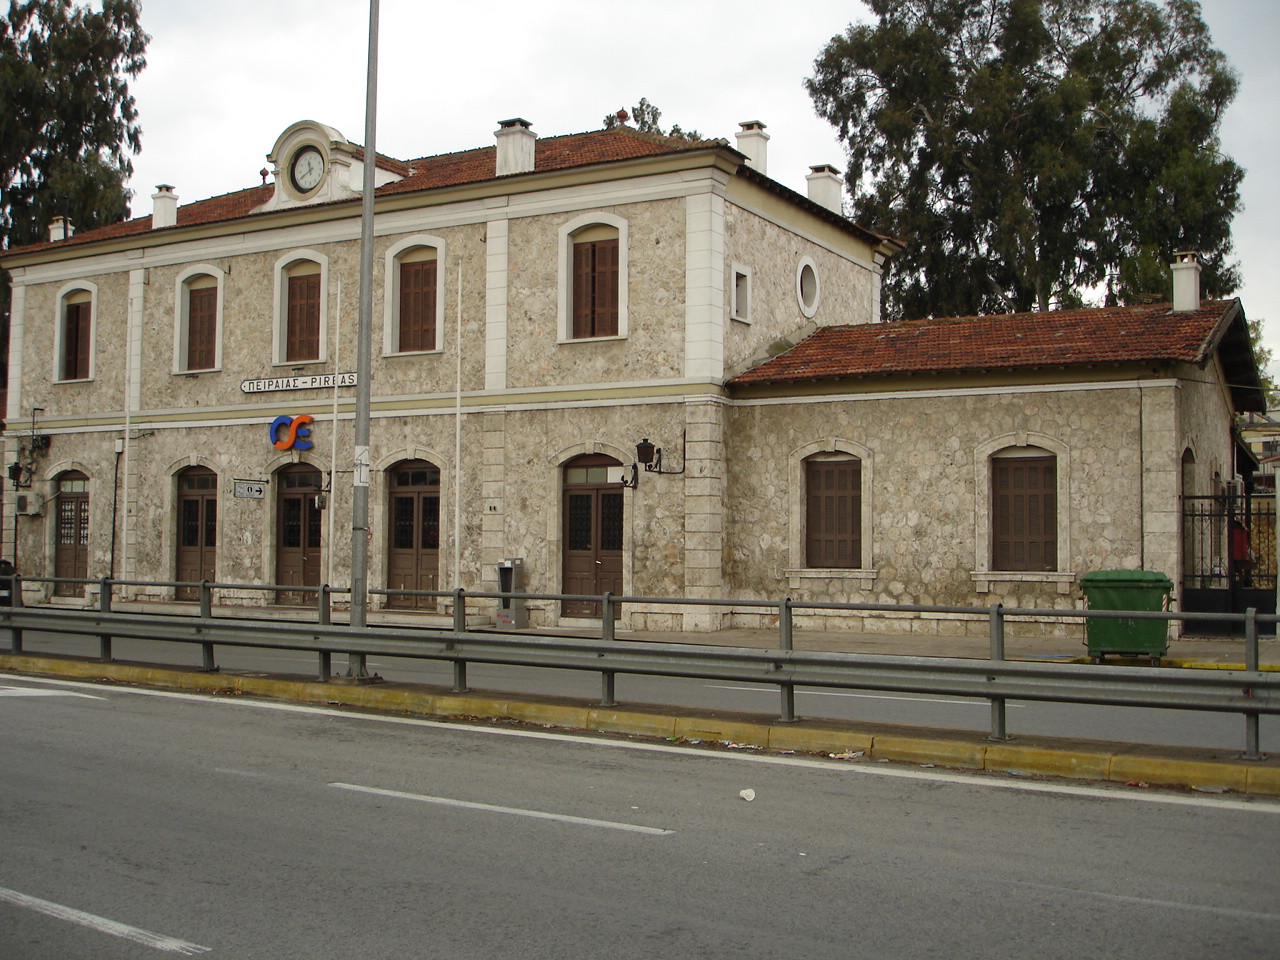 Μνημείο χαρακτηρίστηκε ο παλαιός σιδηροδρομικός σταθμός Πειραιά